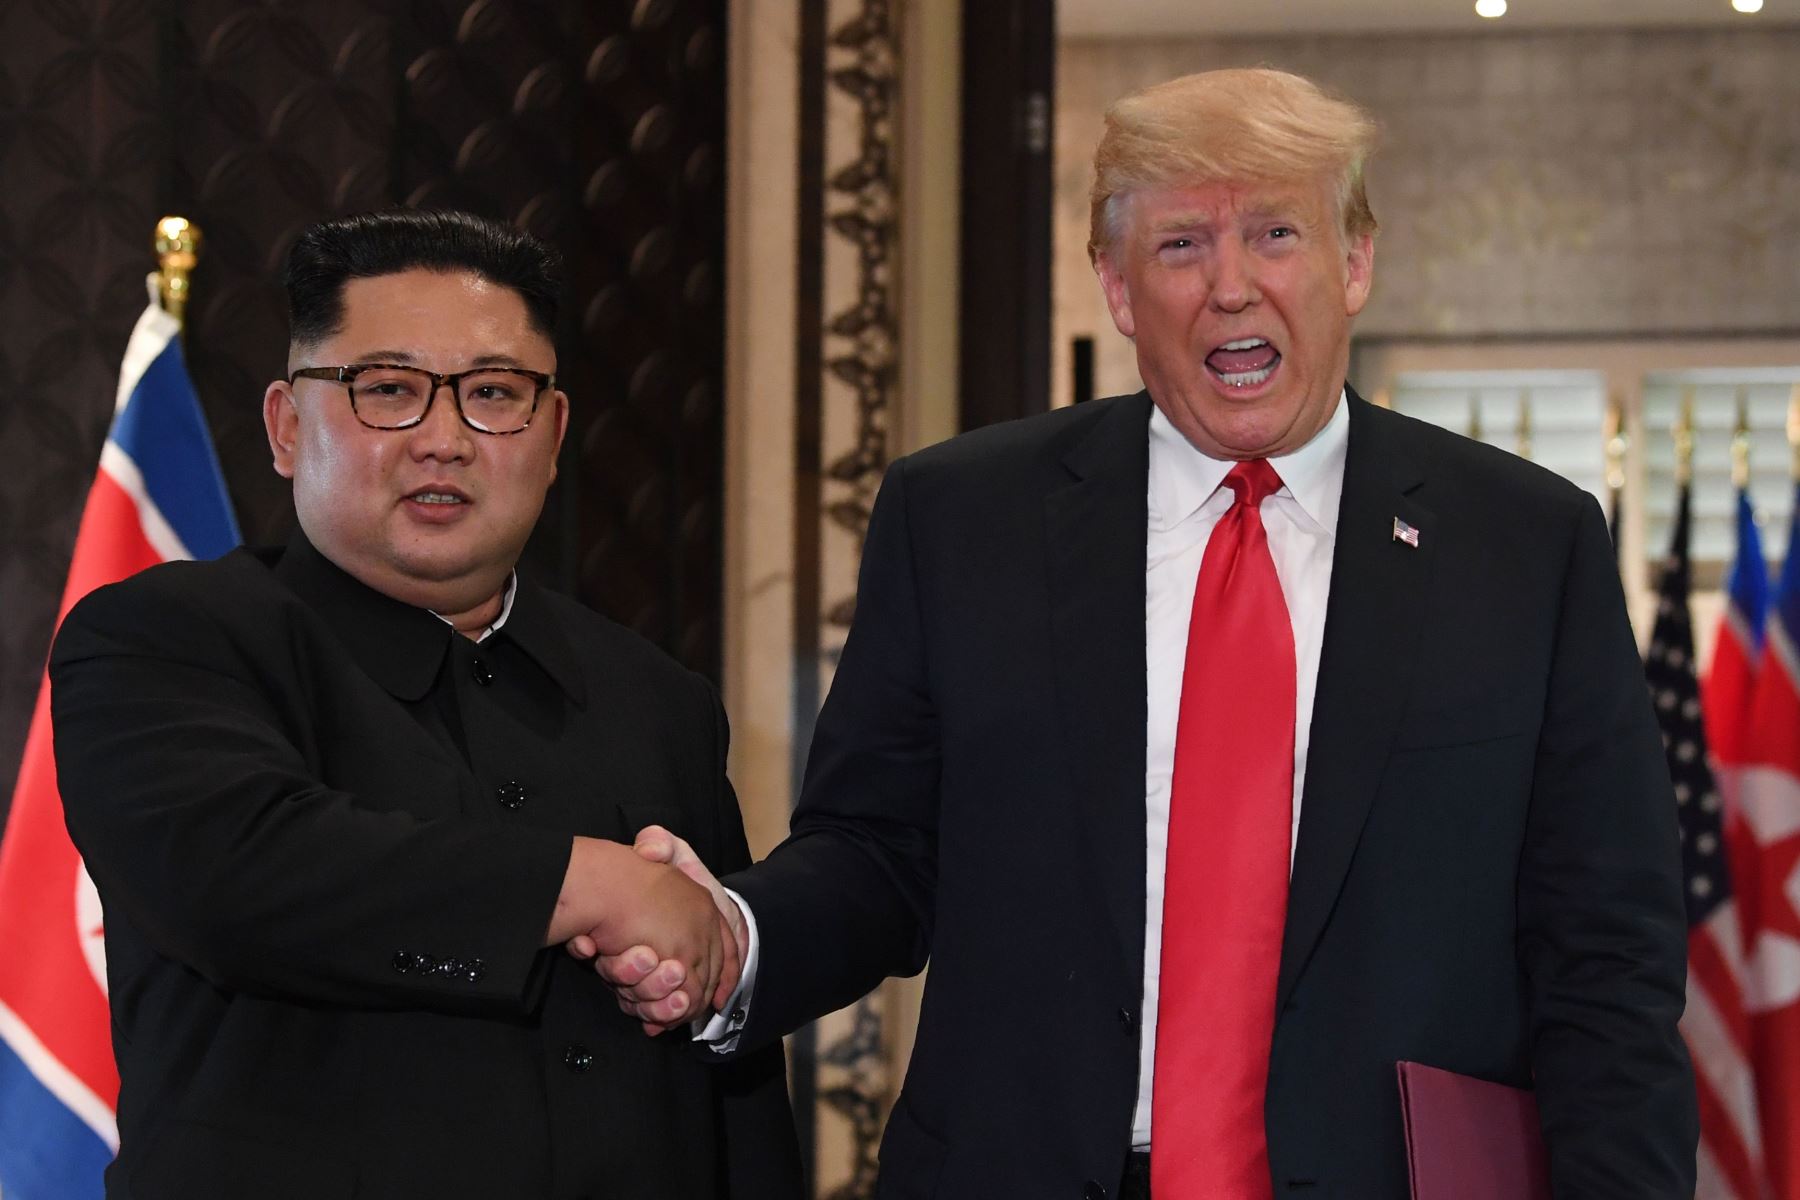 Foto de archivo del 12 de junio de 2018 muestra al presidente de los EE. UU. Donald Trump y al líder de Corea del Norte, Kim Jong Un,  después de su histórica cumbre entre Estados Unidos y Corea del Norte, en Singapur. Foto: AFP